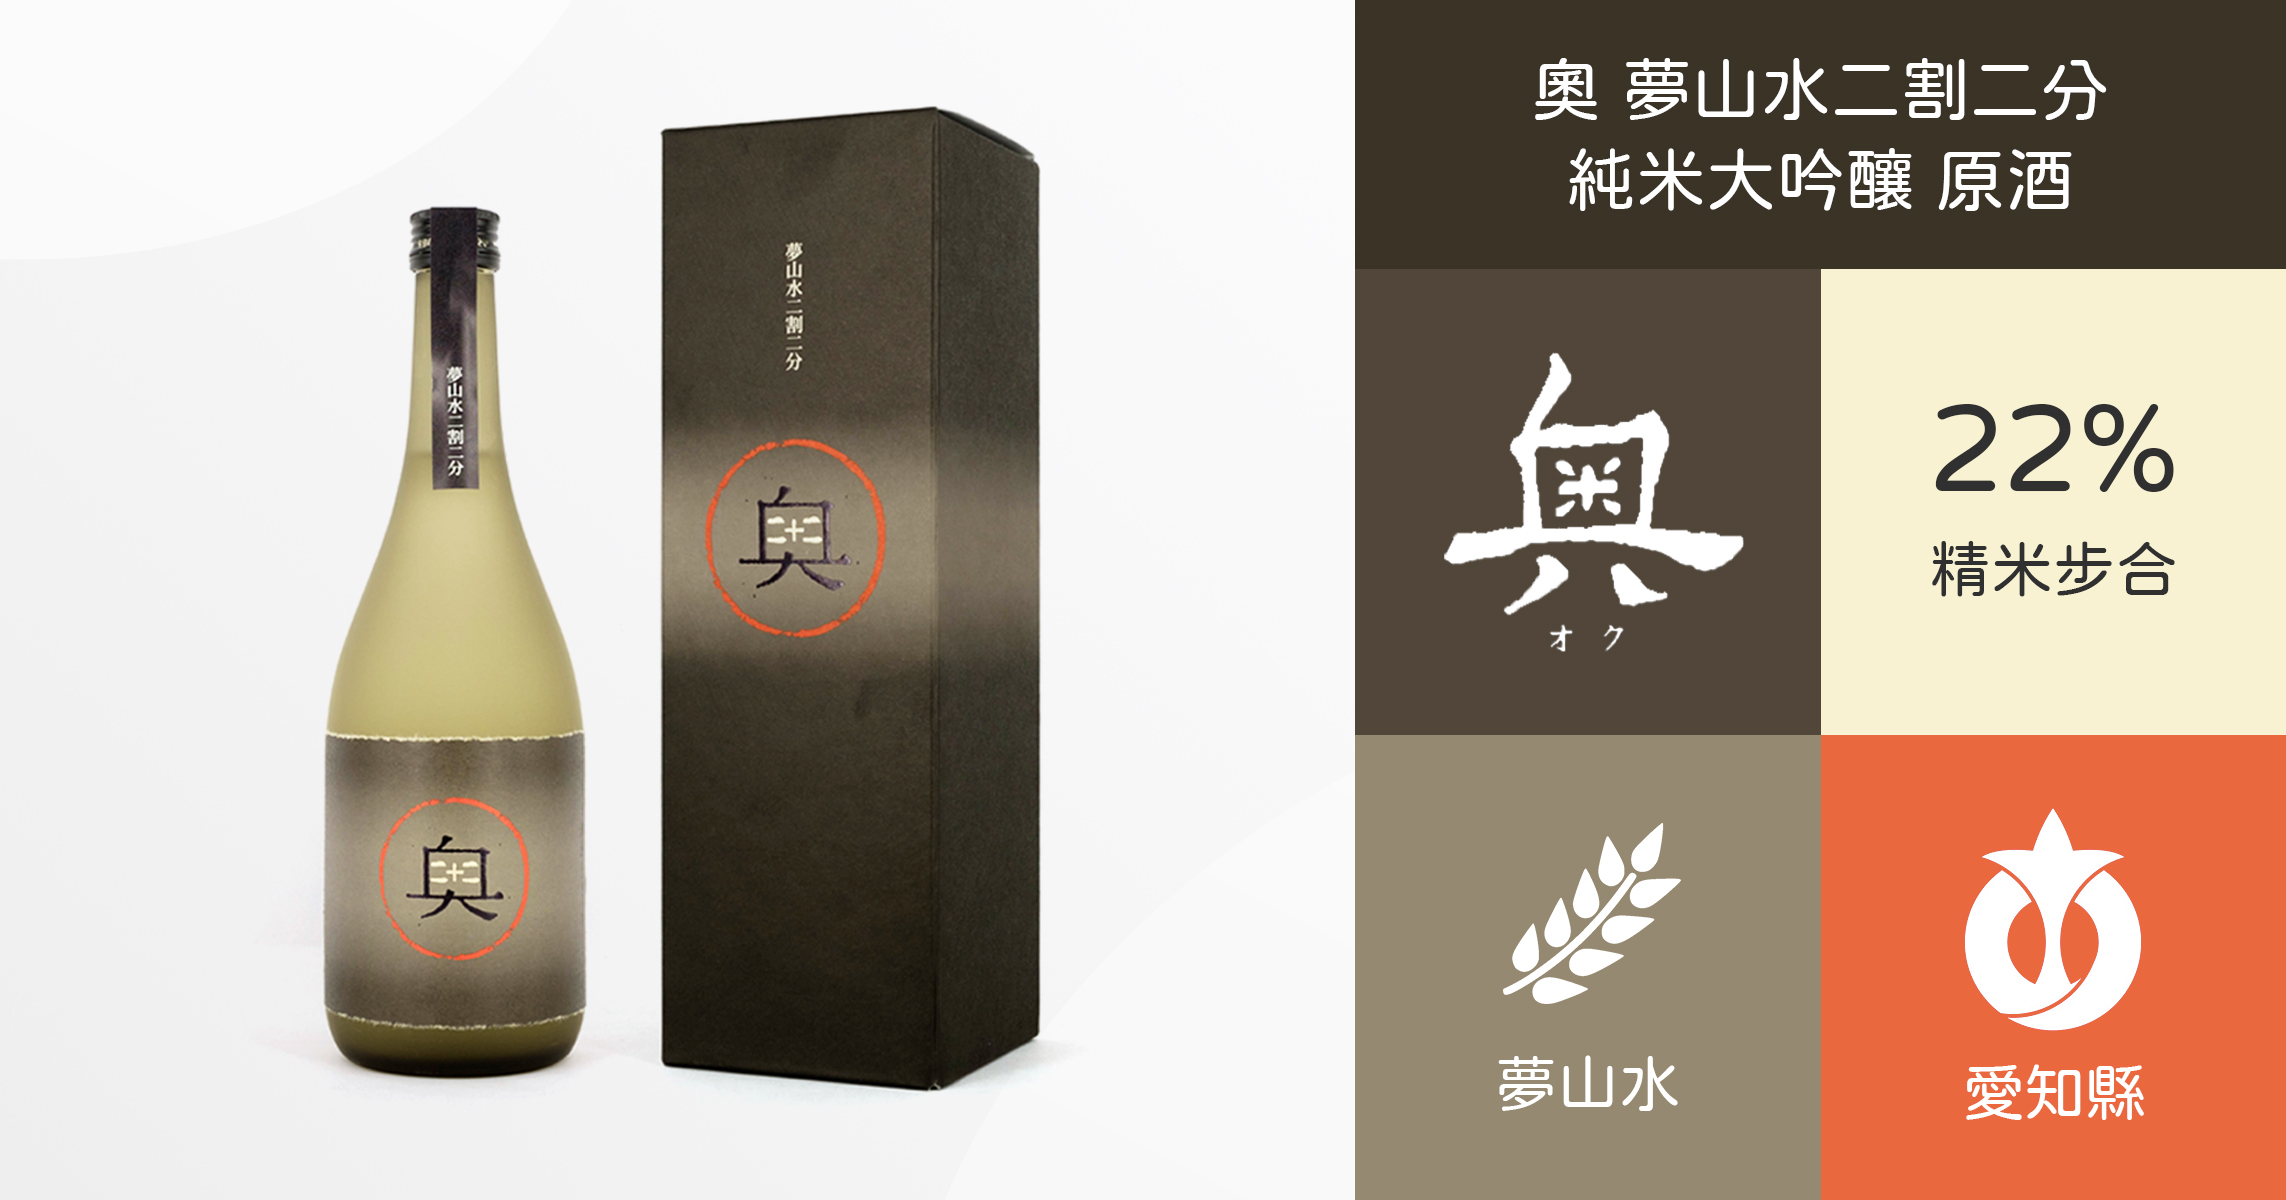 奧 夢山水二割二分 純米大吟釀 原酒 (附木盒)